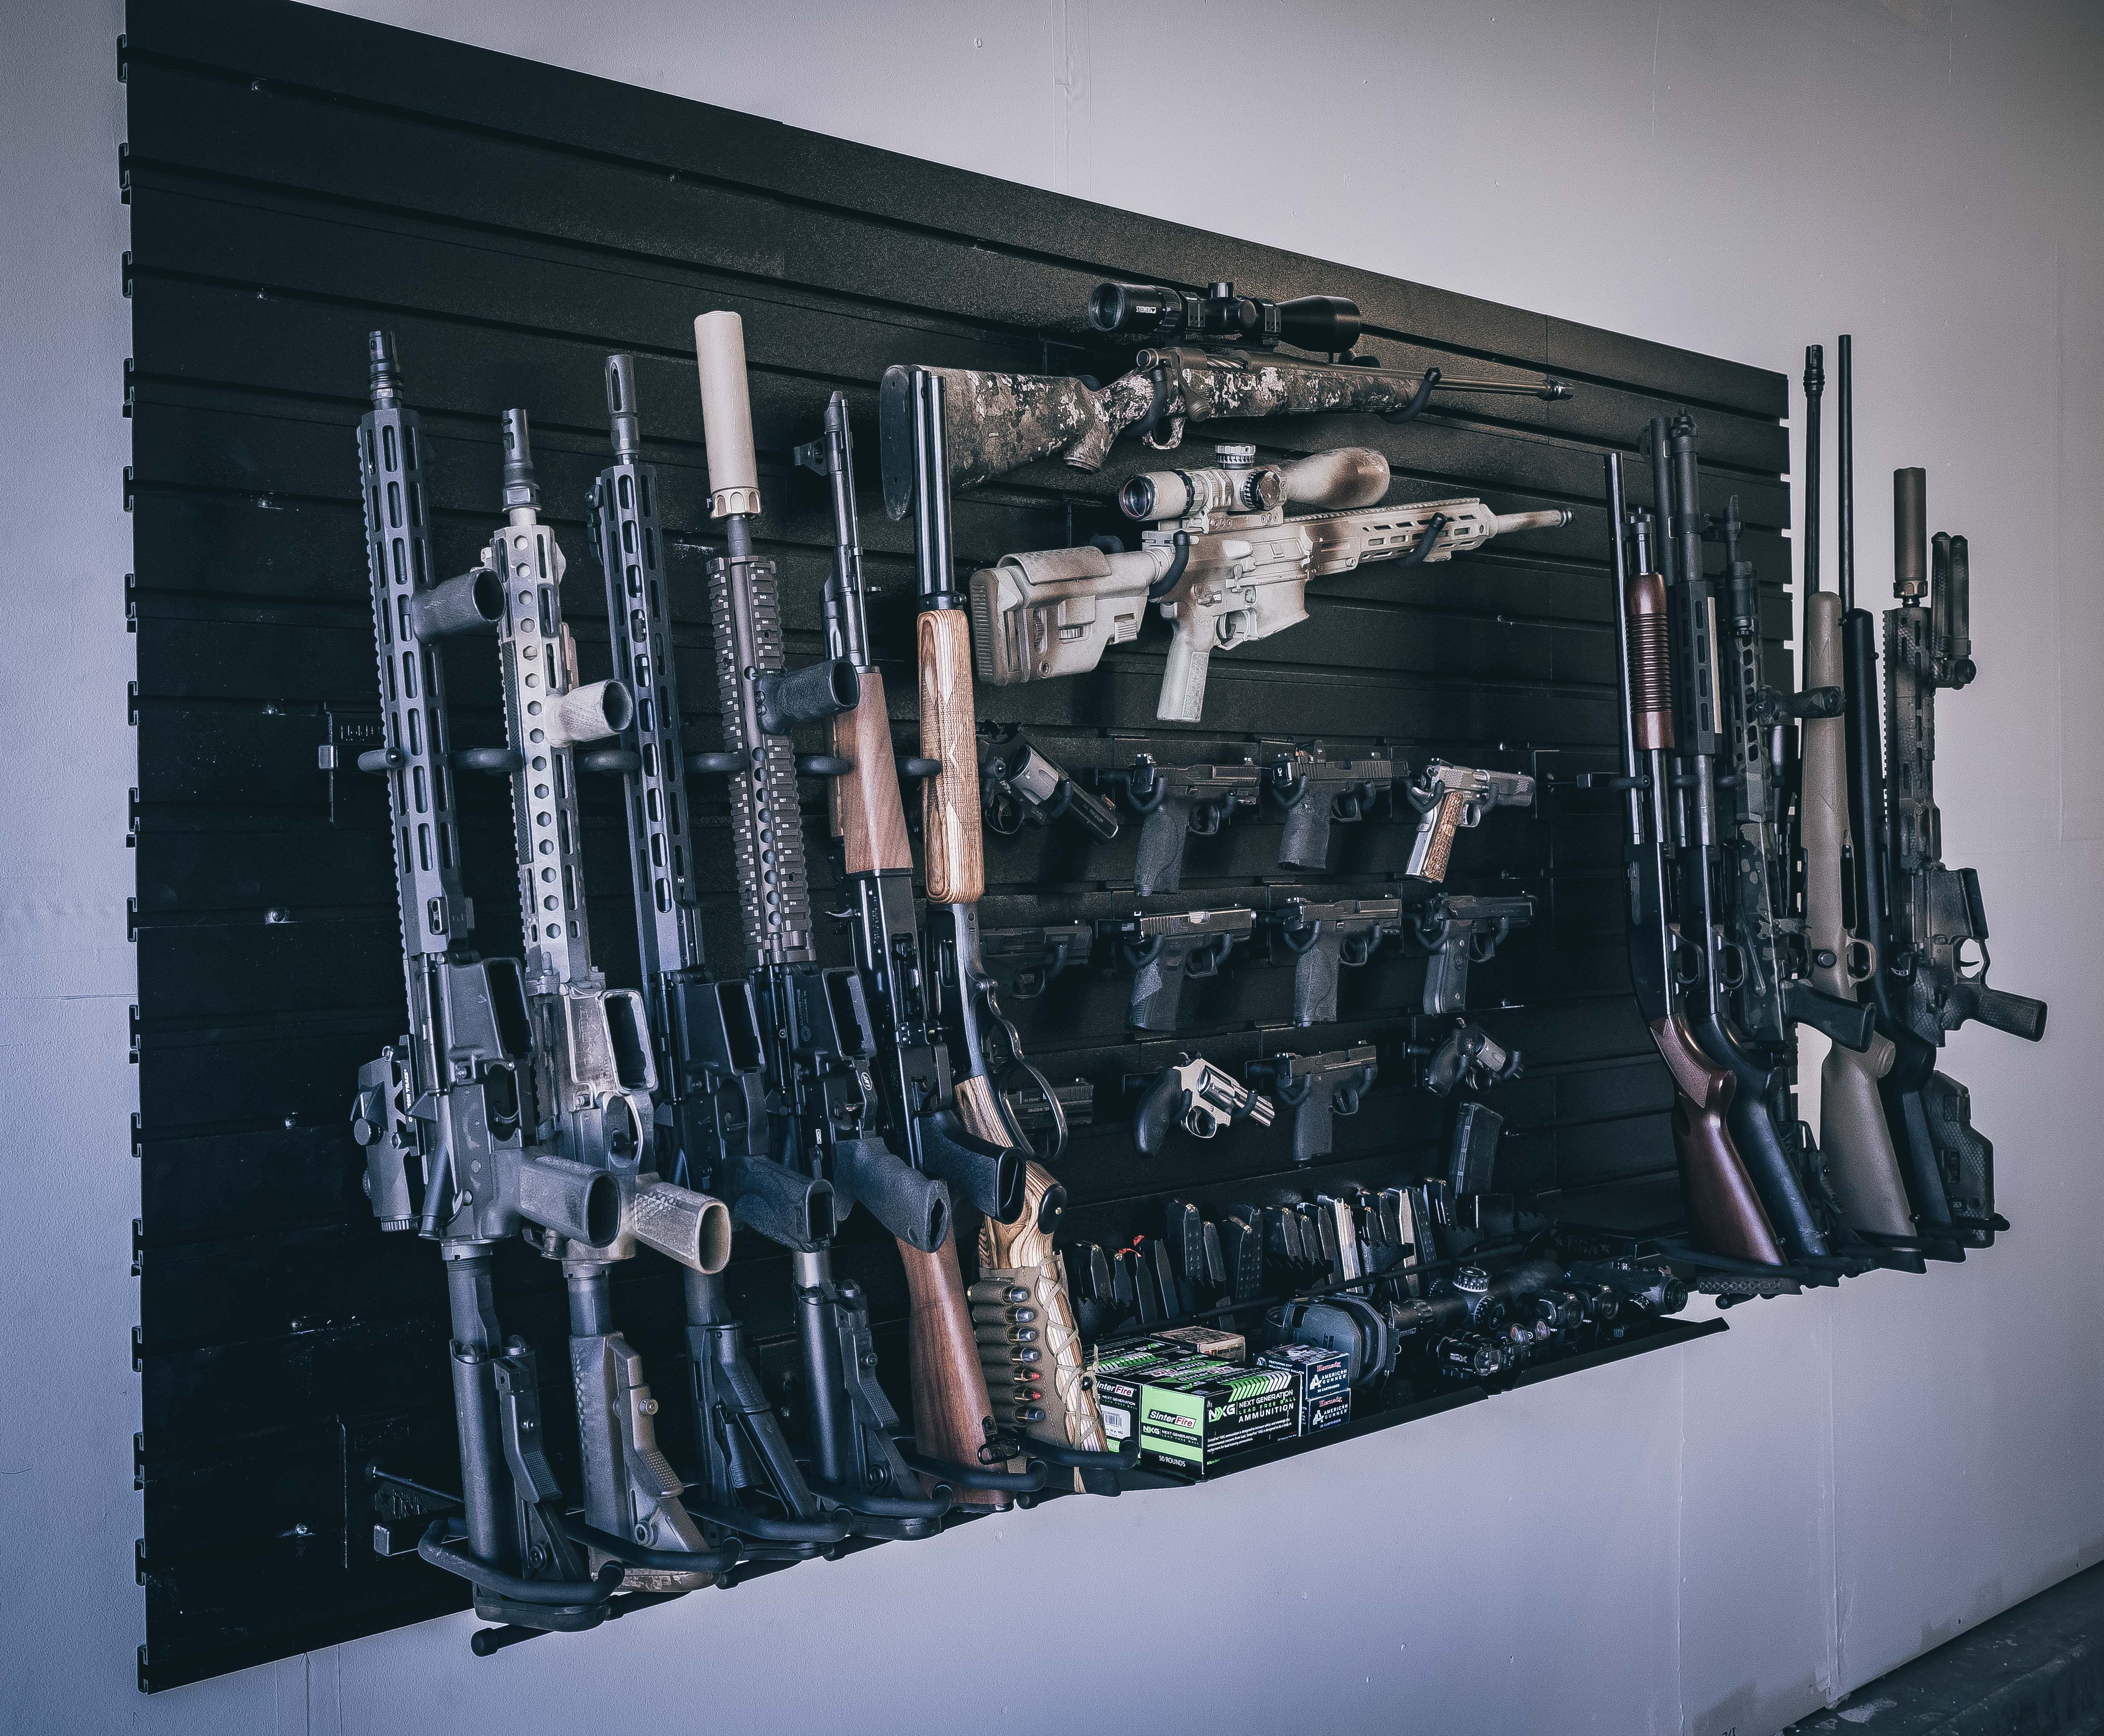 custom built gun rooms